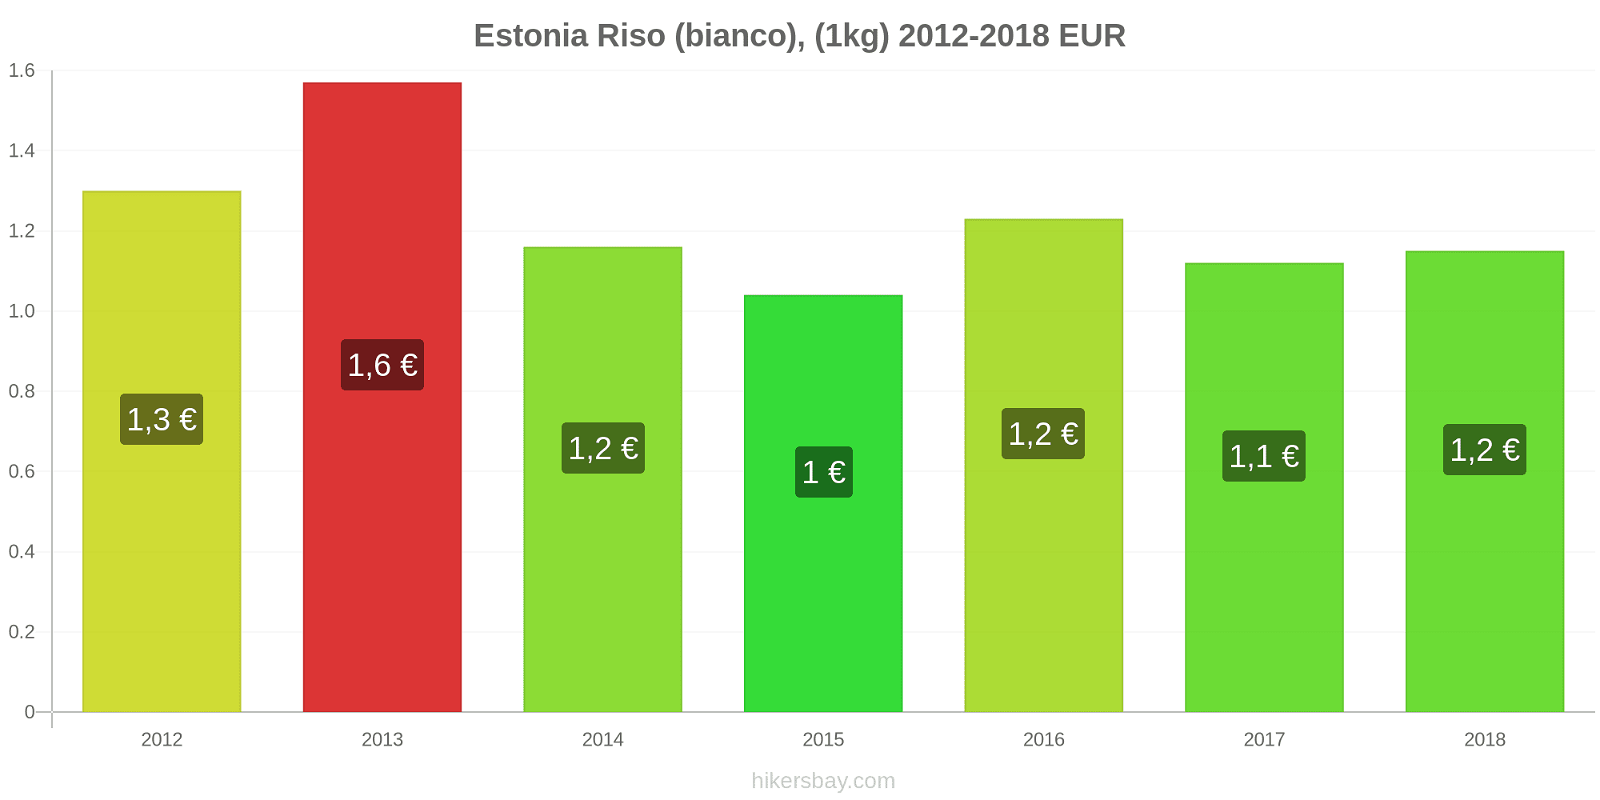 Estonia cambi di prezzo Chilo di riso bianco hikersbay.com